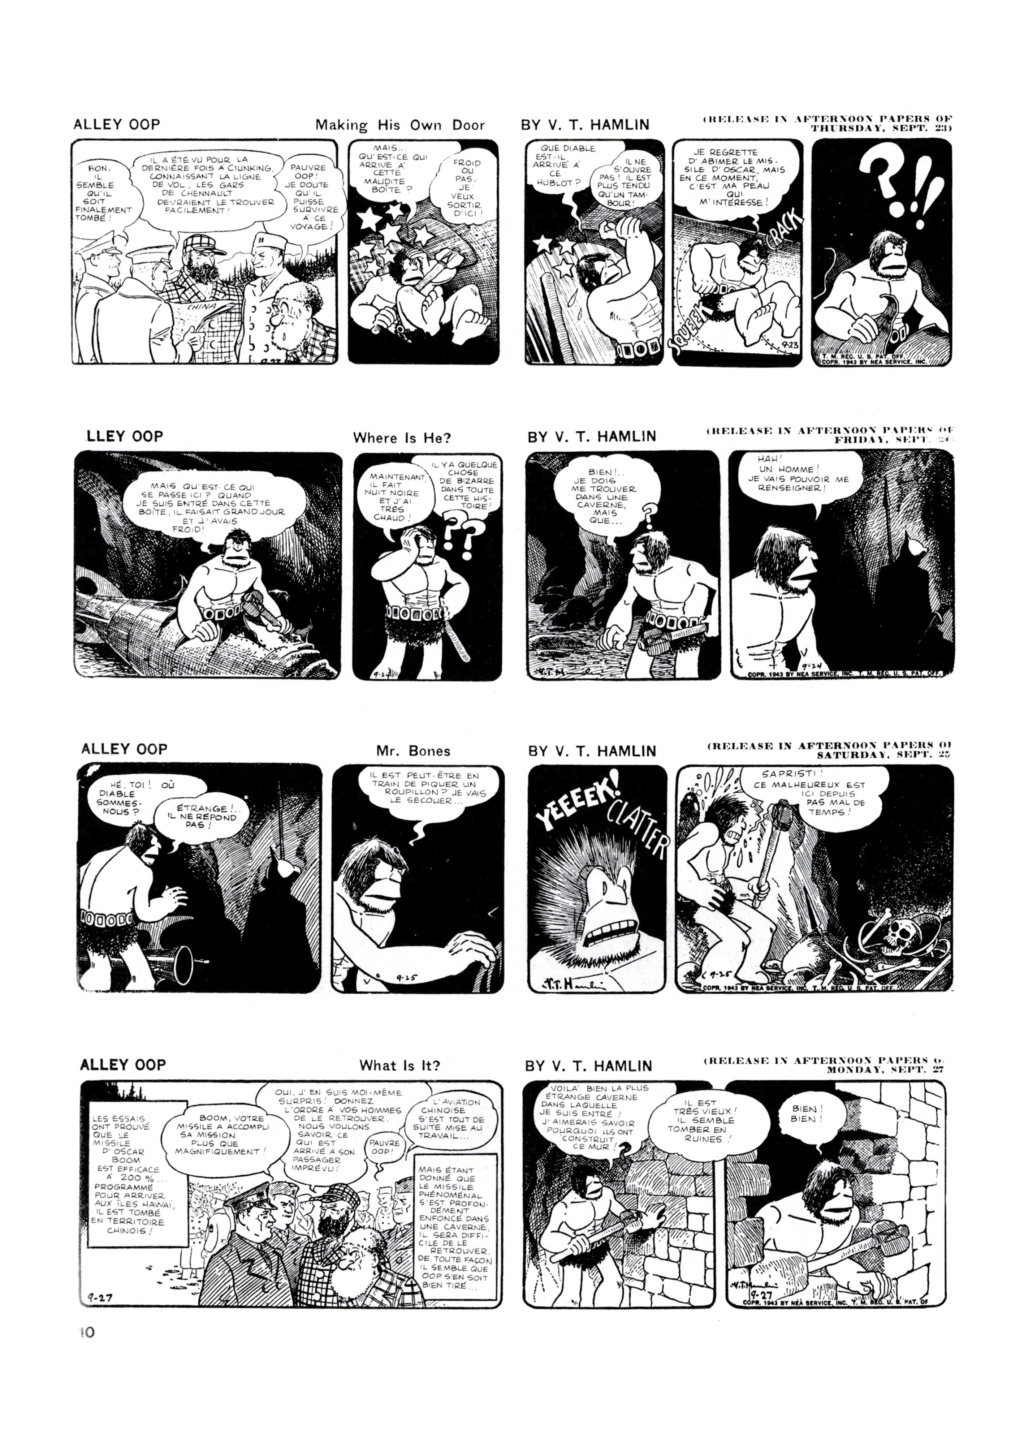 9ème Art, musée de la bande dessinée par Morris et Vankeer - Page 5 1024